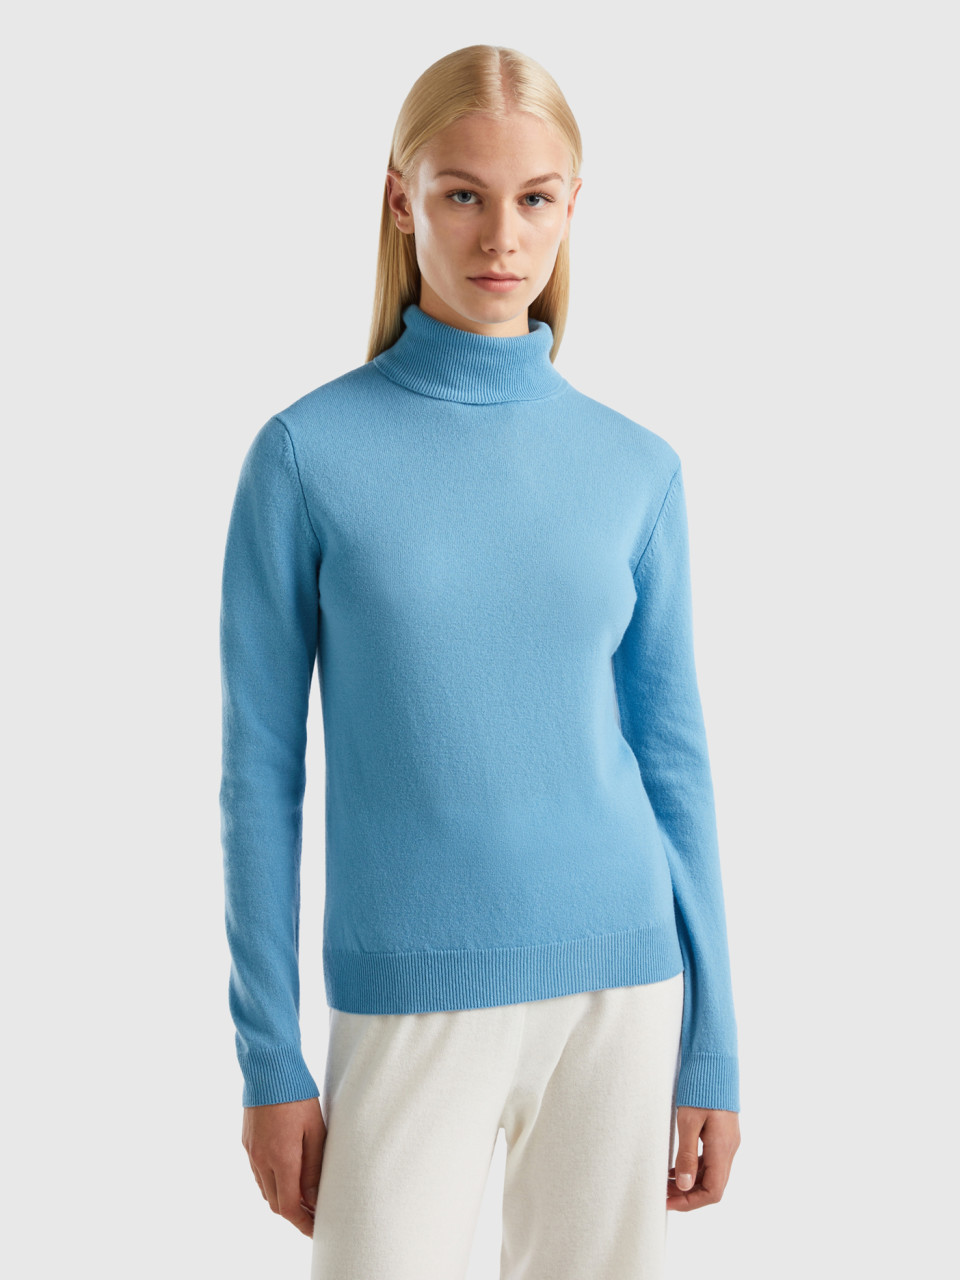 Benetton, Light Blue Turtleneck In Pure Merino Wool, Light Blue, Women